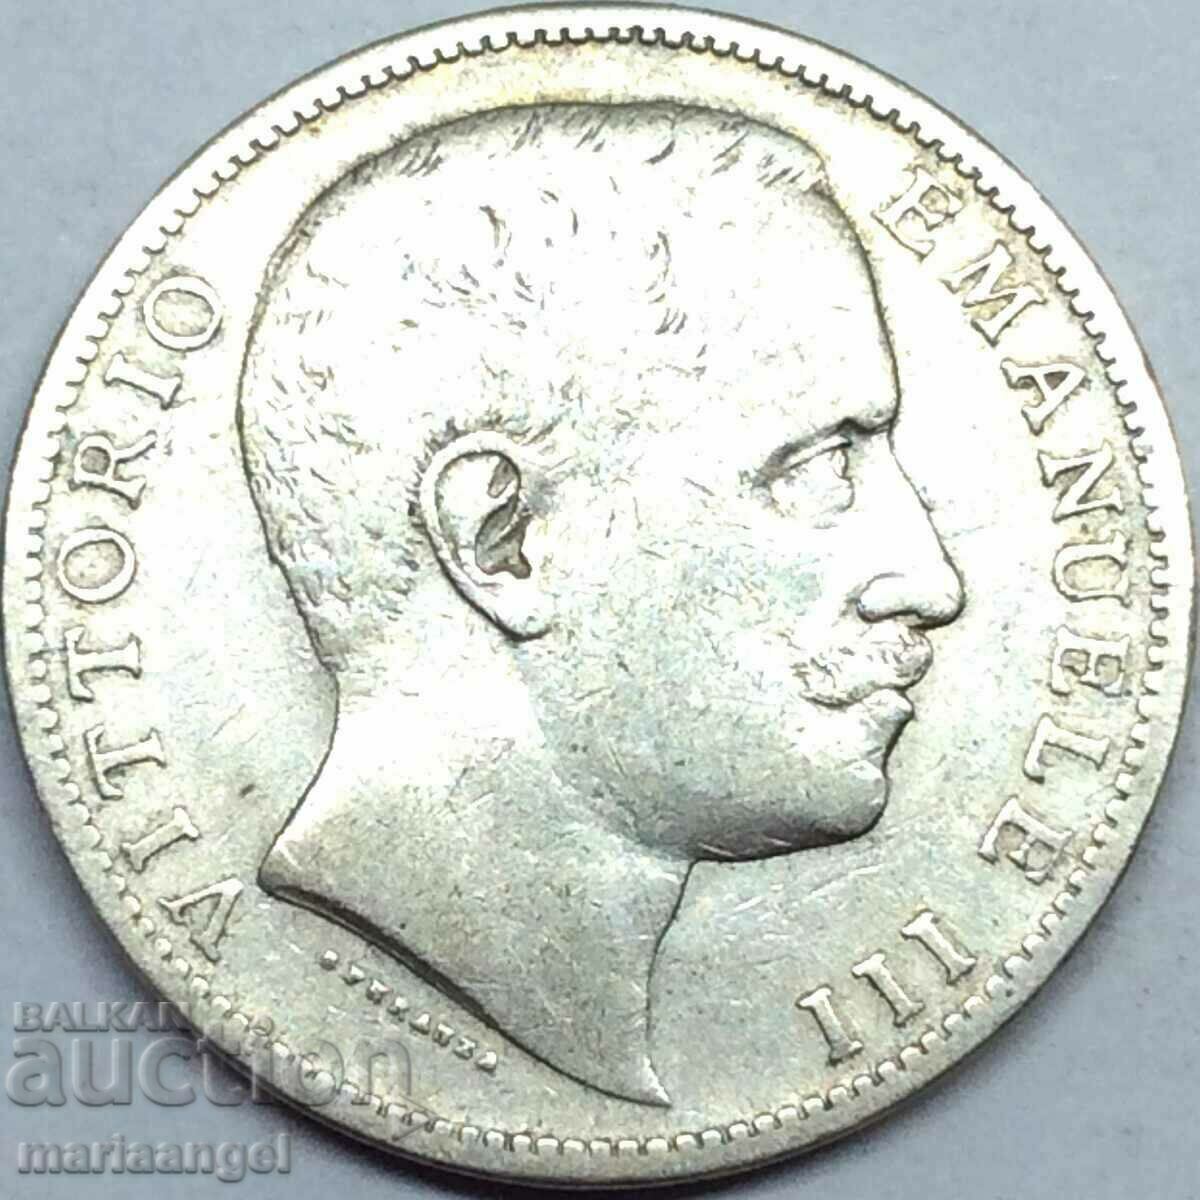 2 λίρες 1905 Ιταλία Savoy Eagle - ασήμι Sabauda